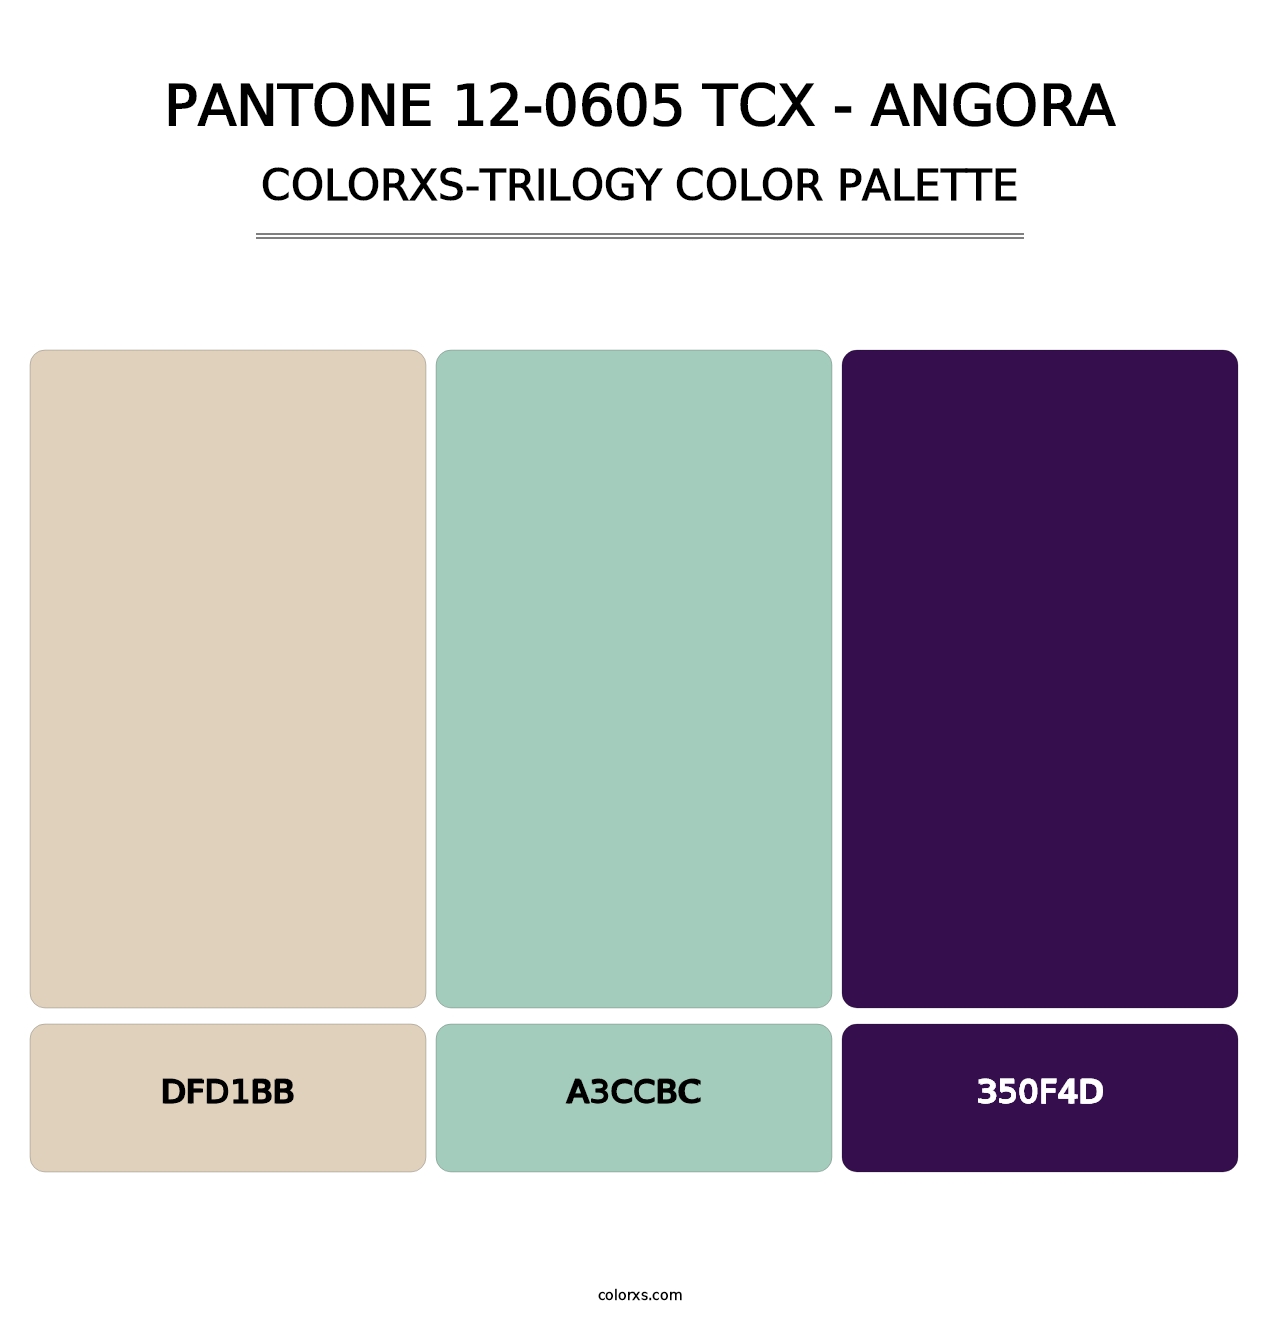 PANTONE 12-0605 TCX - Angora - Colorxs Trilogy Palette